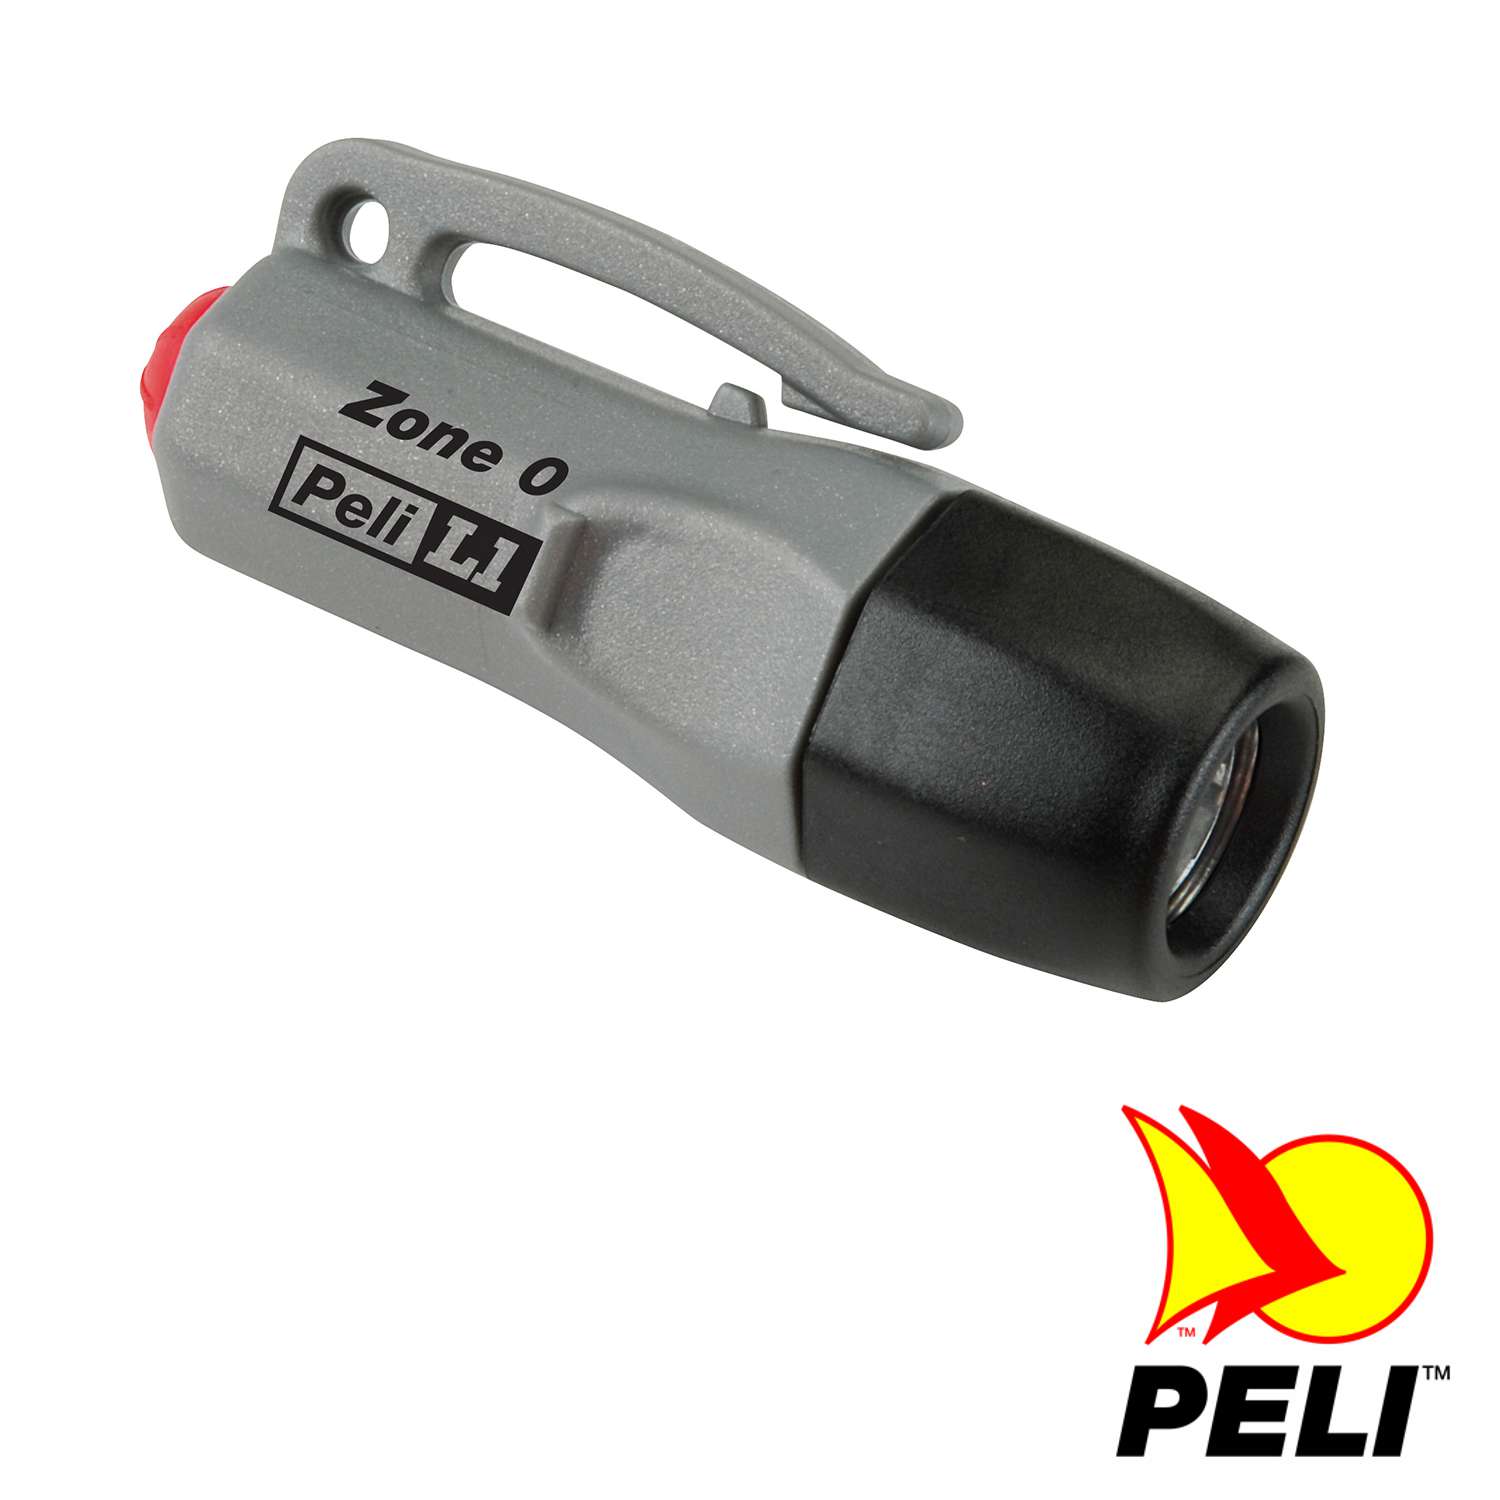 Peli™ L1 1930Z0 LED Taschenlampe mit Schlaufe, EX-geschützt Zone 0, Grau, inkl. Knopfzellen